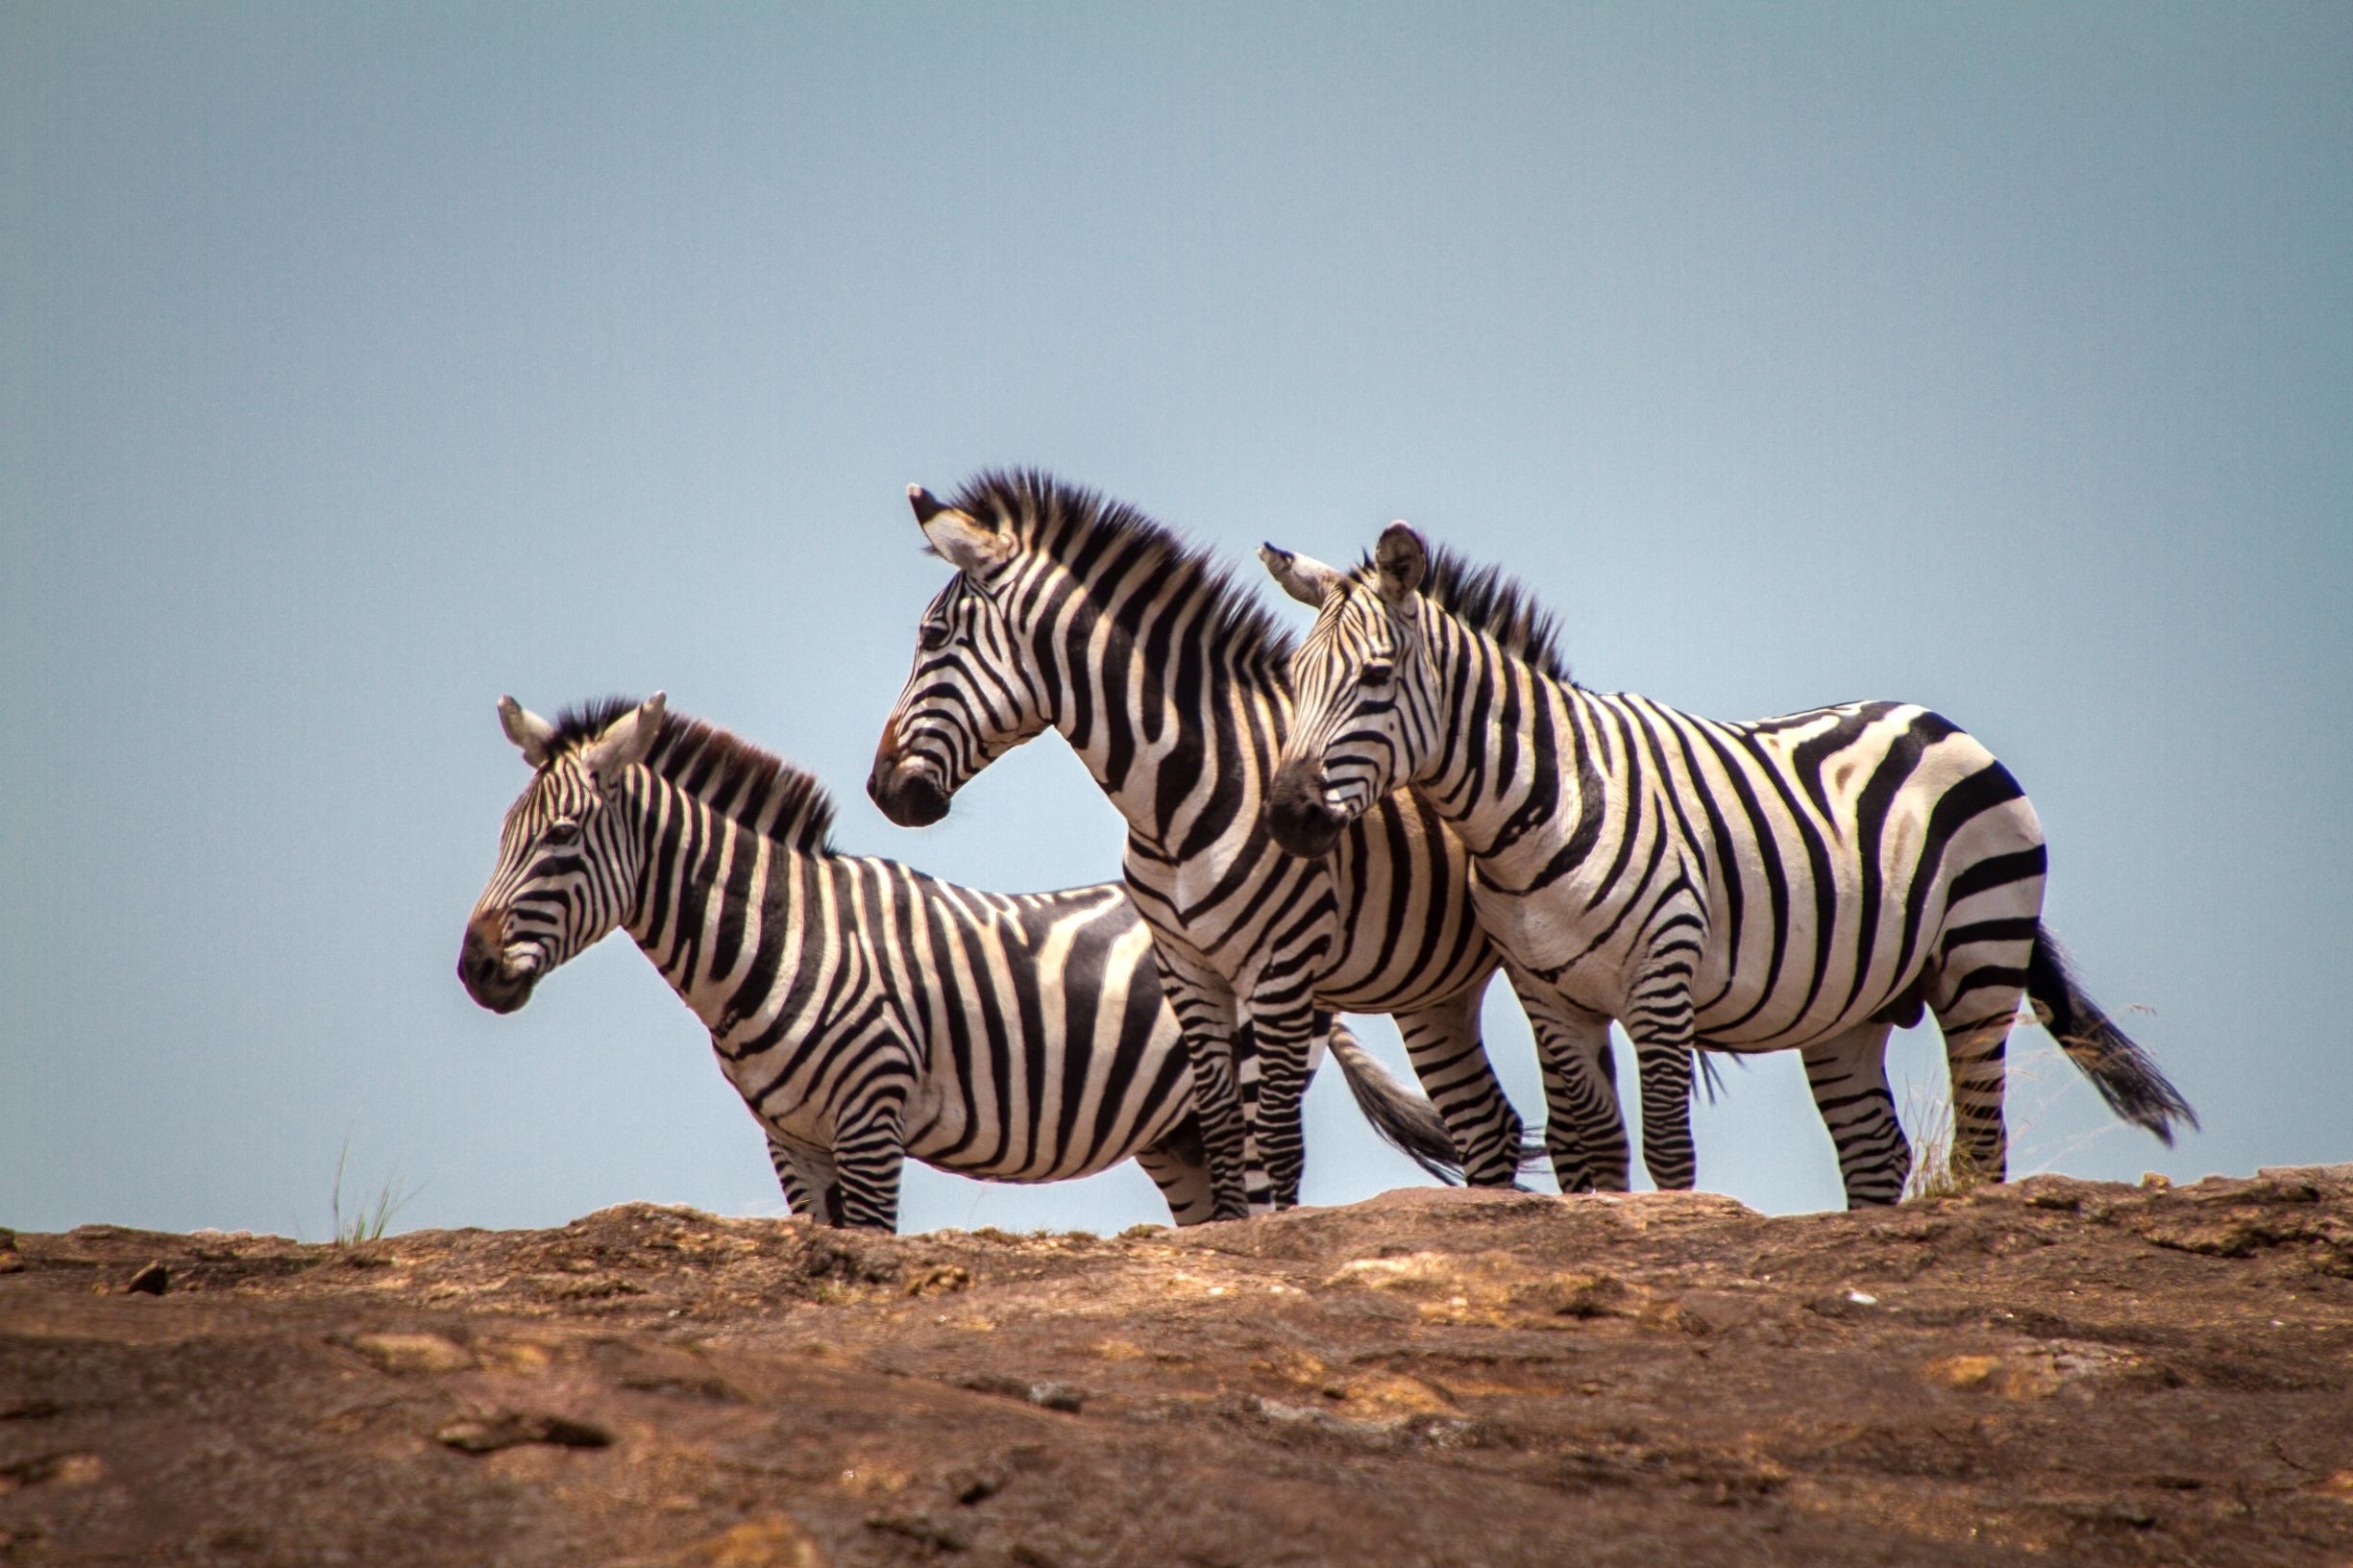 Masai Mara 2020, Olonana on Safari, 2450x1640 HD Desktop